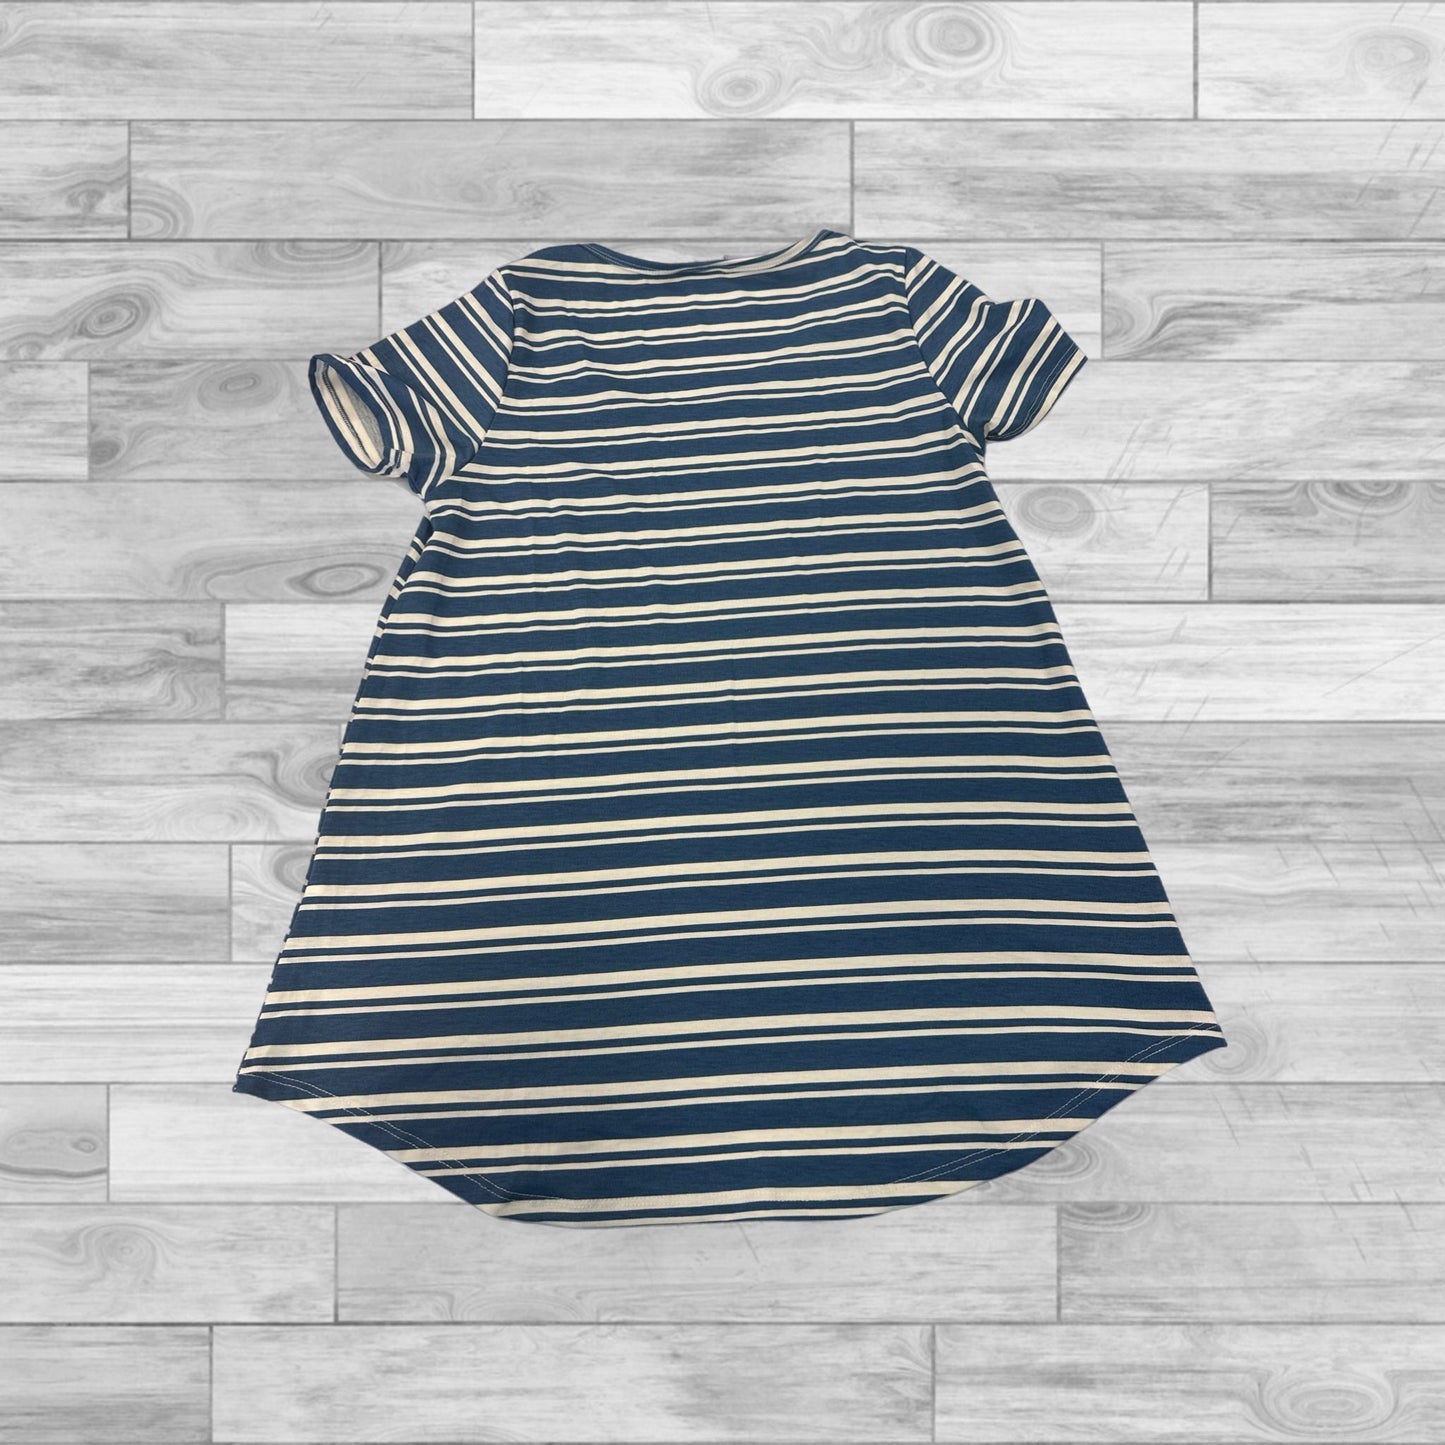 Striped Pattern Top Short Sleeve Lularoe, Size S